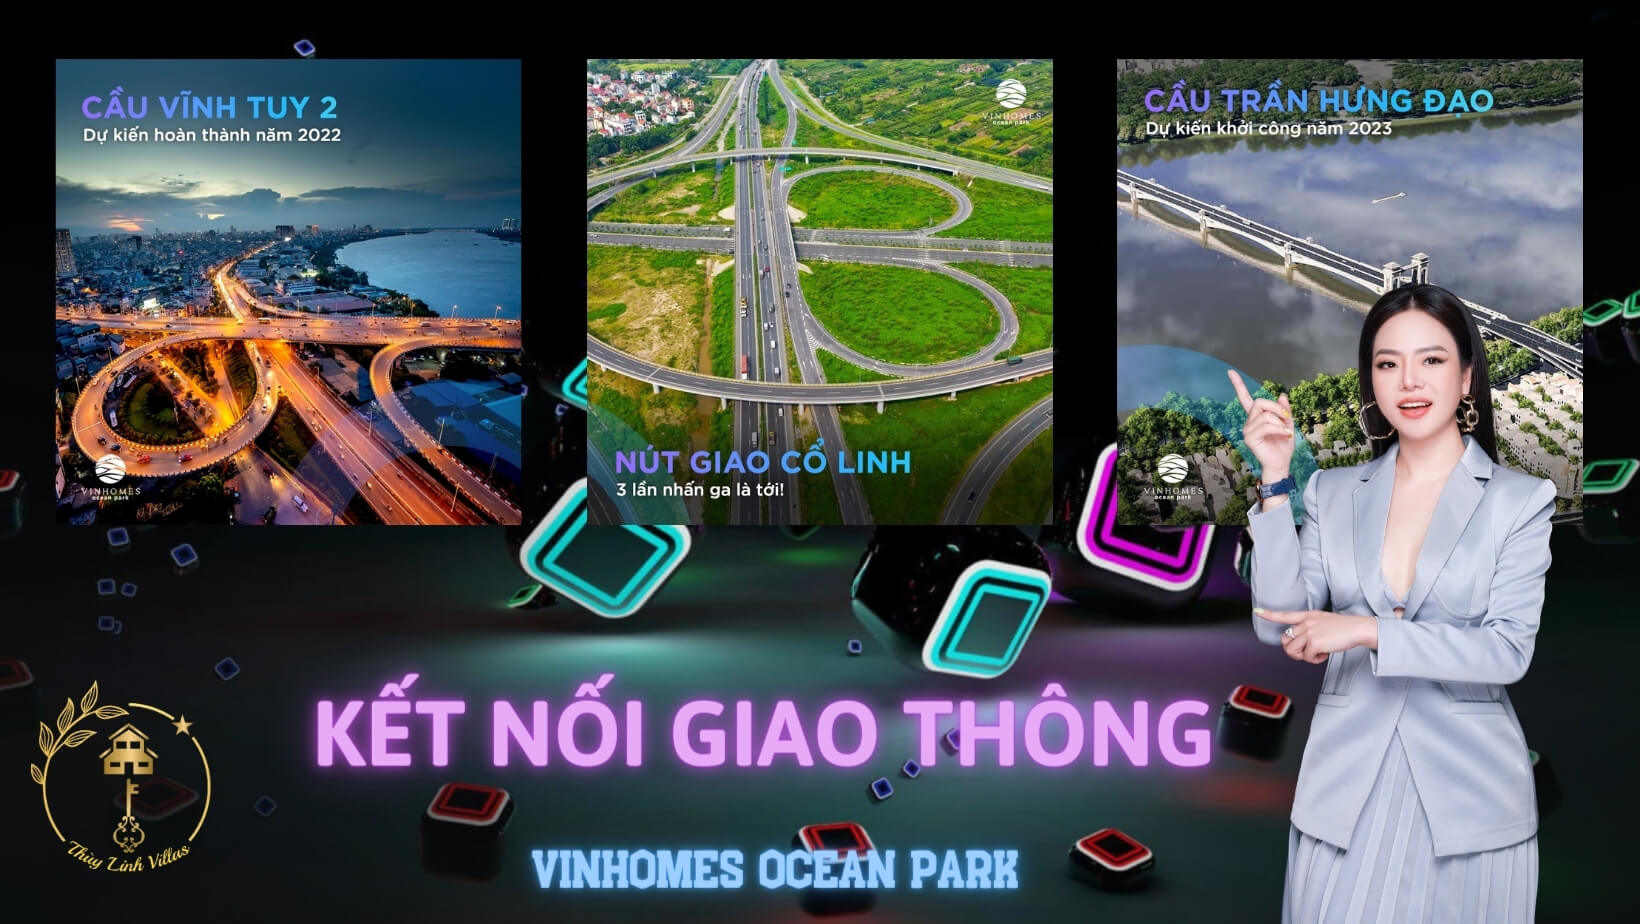 Kết nối giao thông - Thuỳ Linh Villas 0935088888